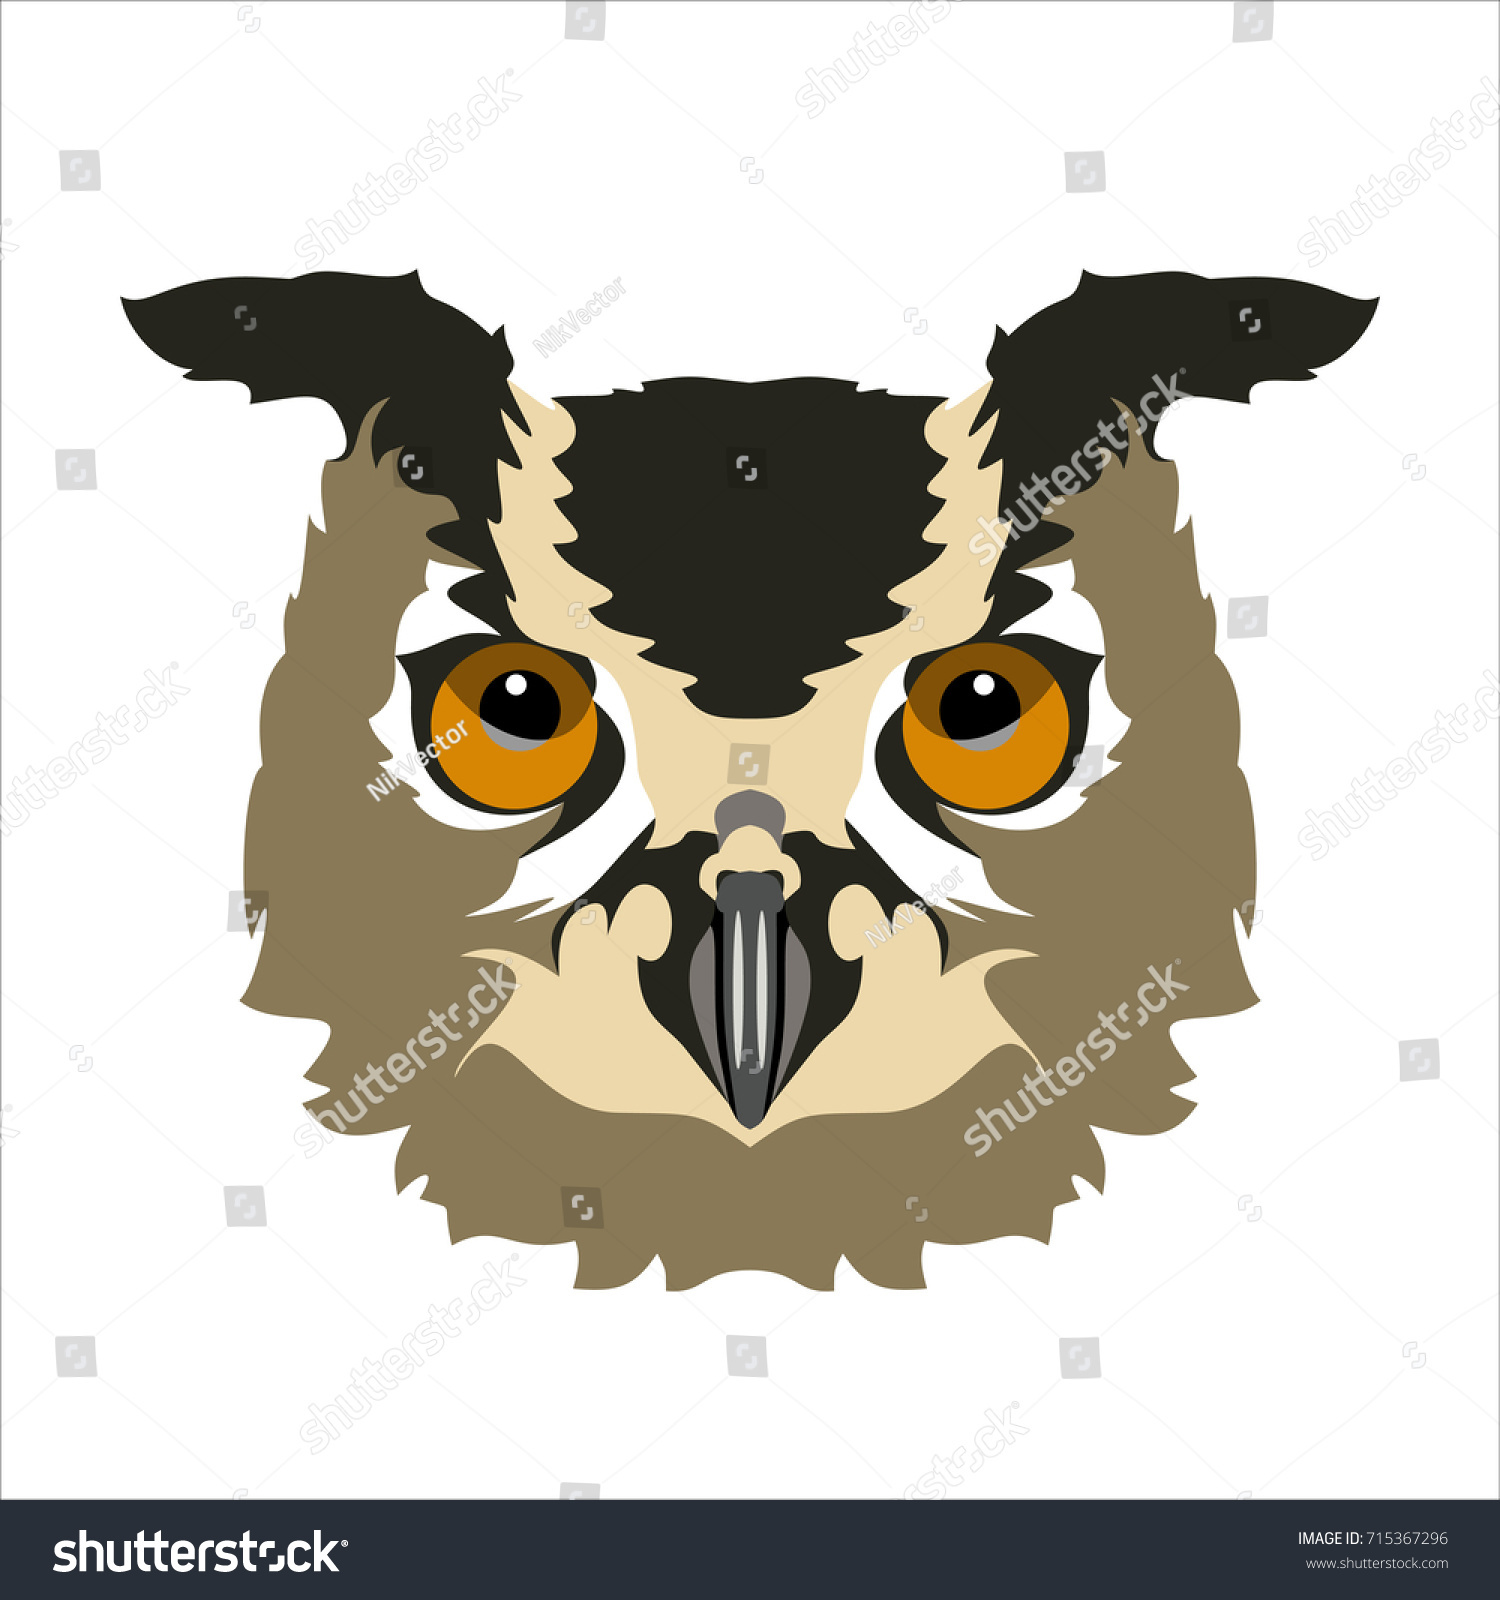 SVG of owl svg